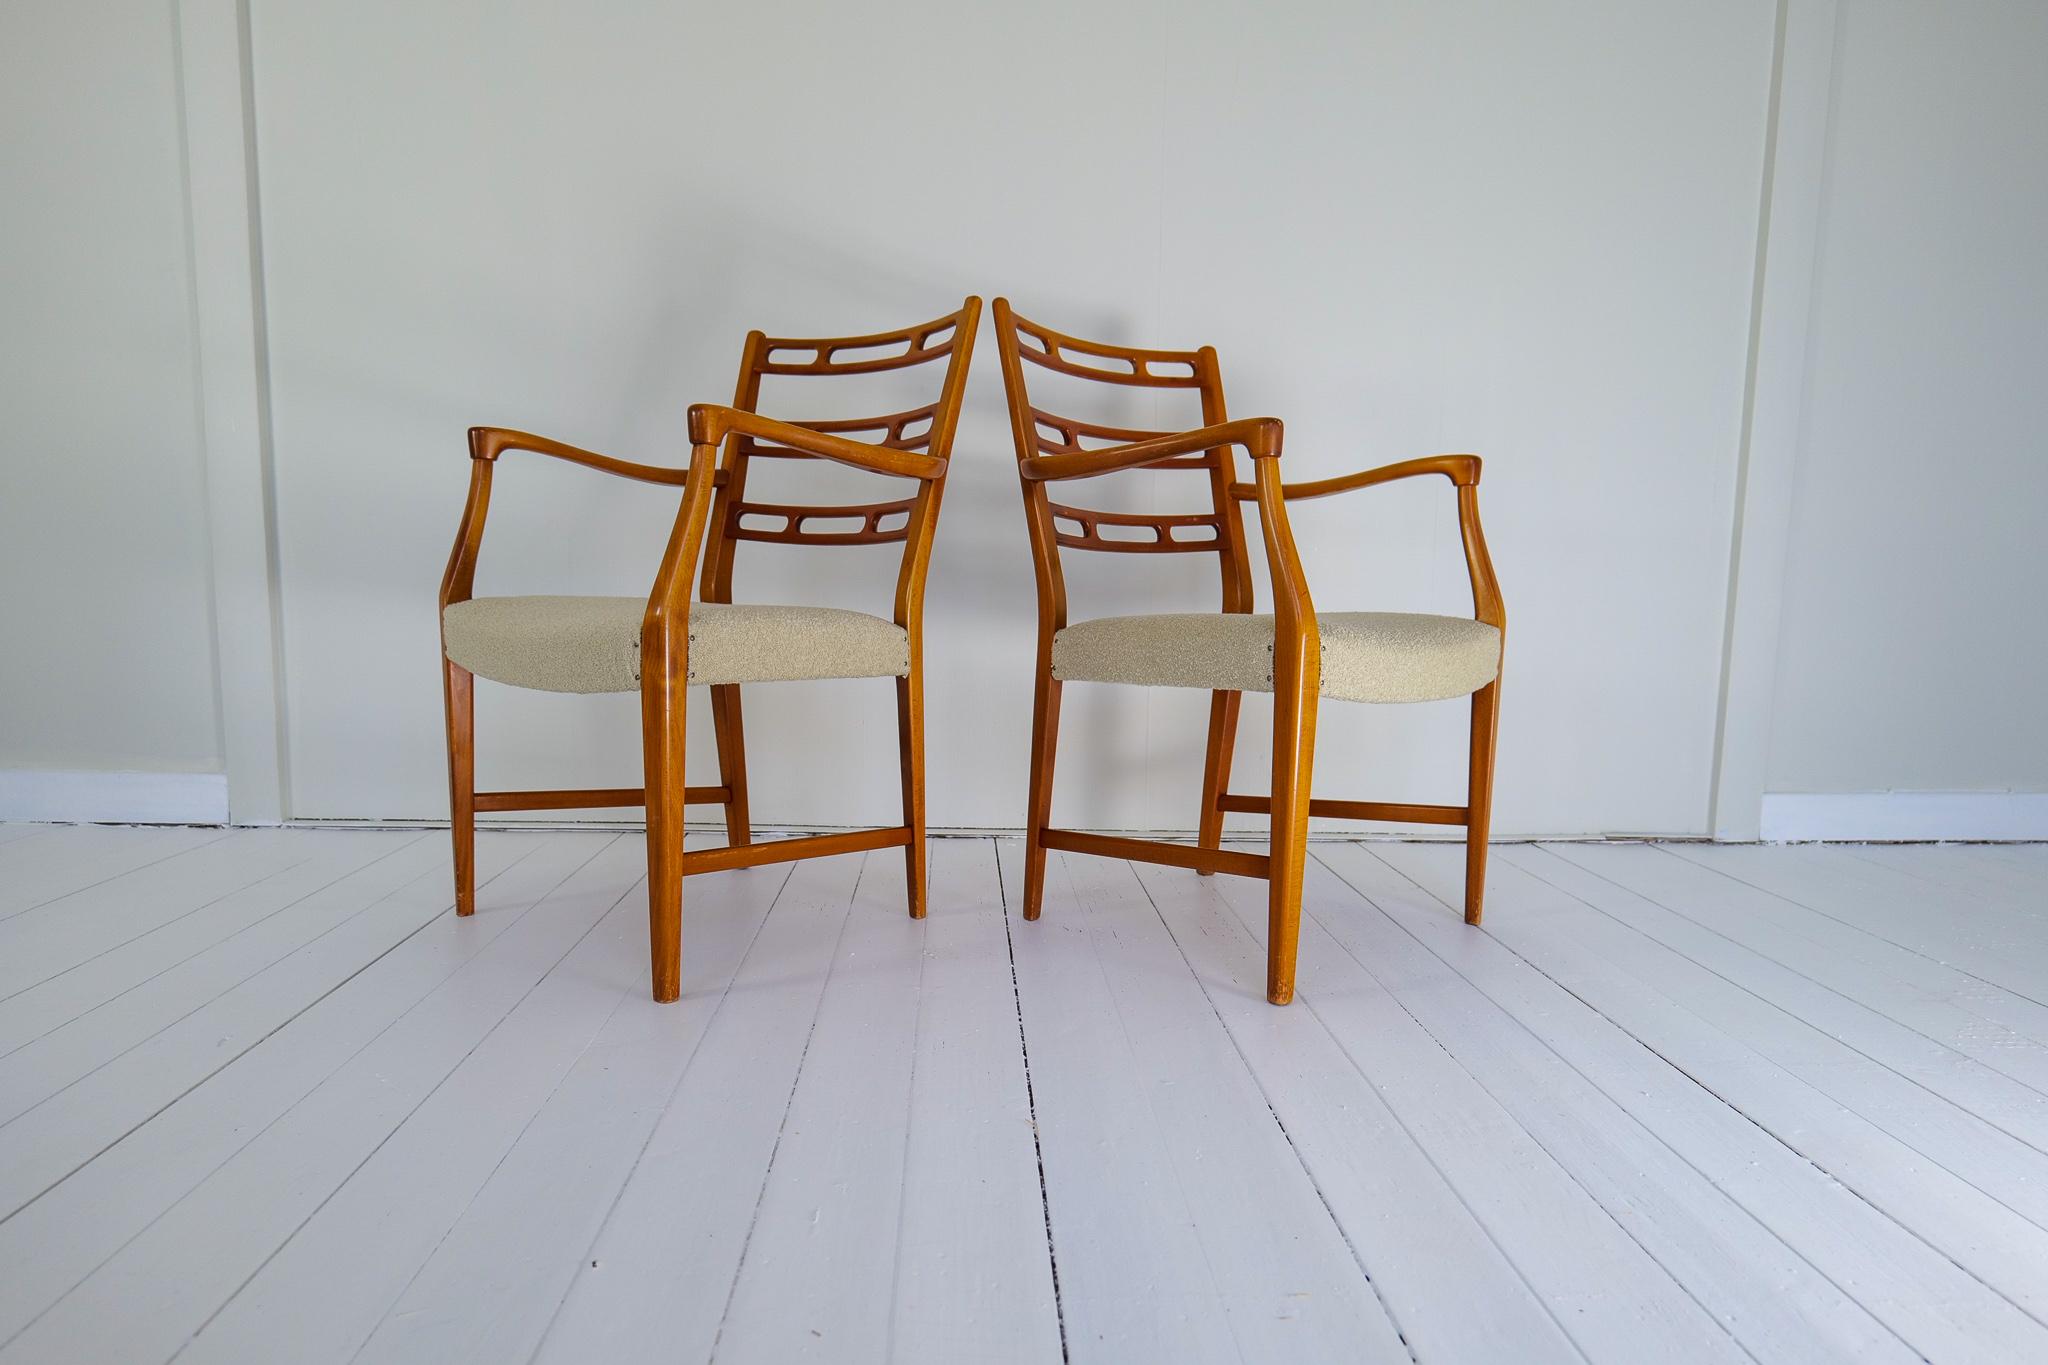 David/One est le créateur de la série Futura conçue pour NK Nordiska Kompaniet Suède. Ces deux fauteuils en hêtre laqué ont une allure à la fois moderne et sophistiquée. L'assise a été récemment recouverte d'un tissu bouclé blanc cassé. 

Bon état